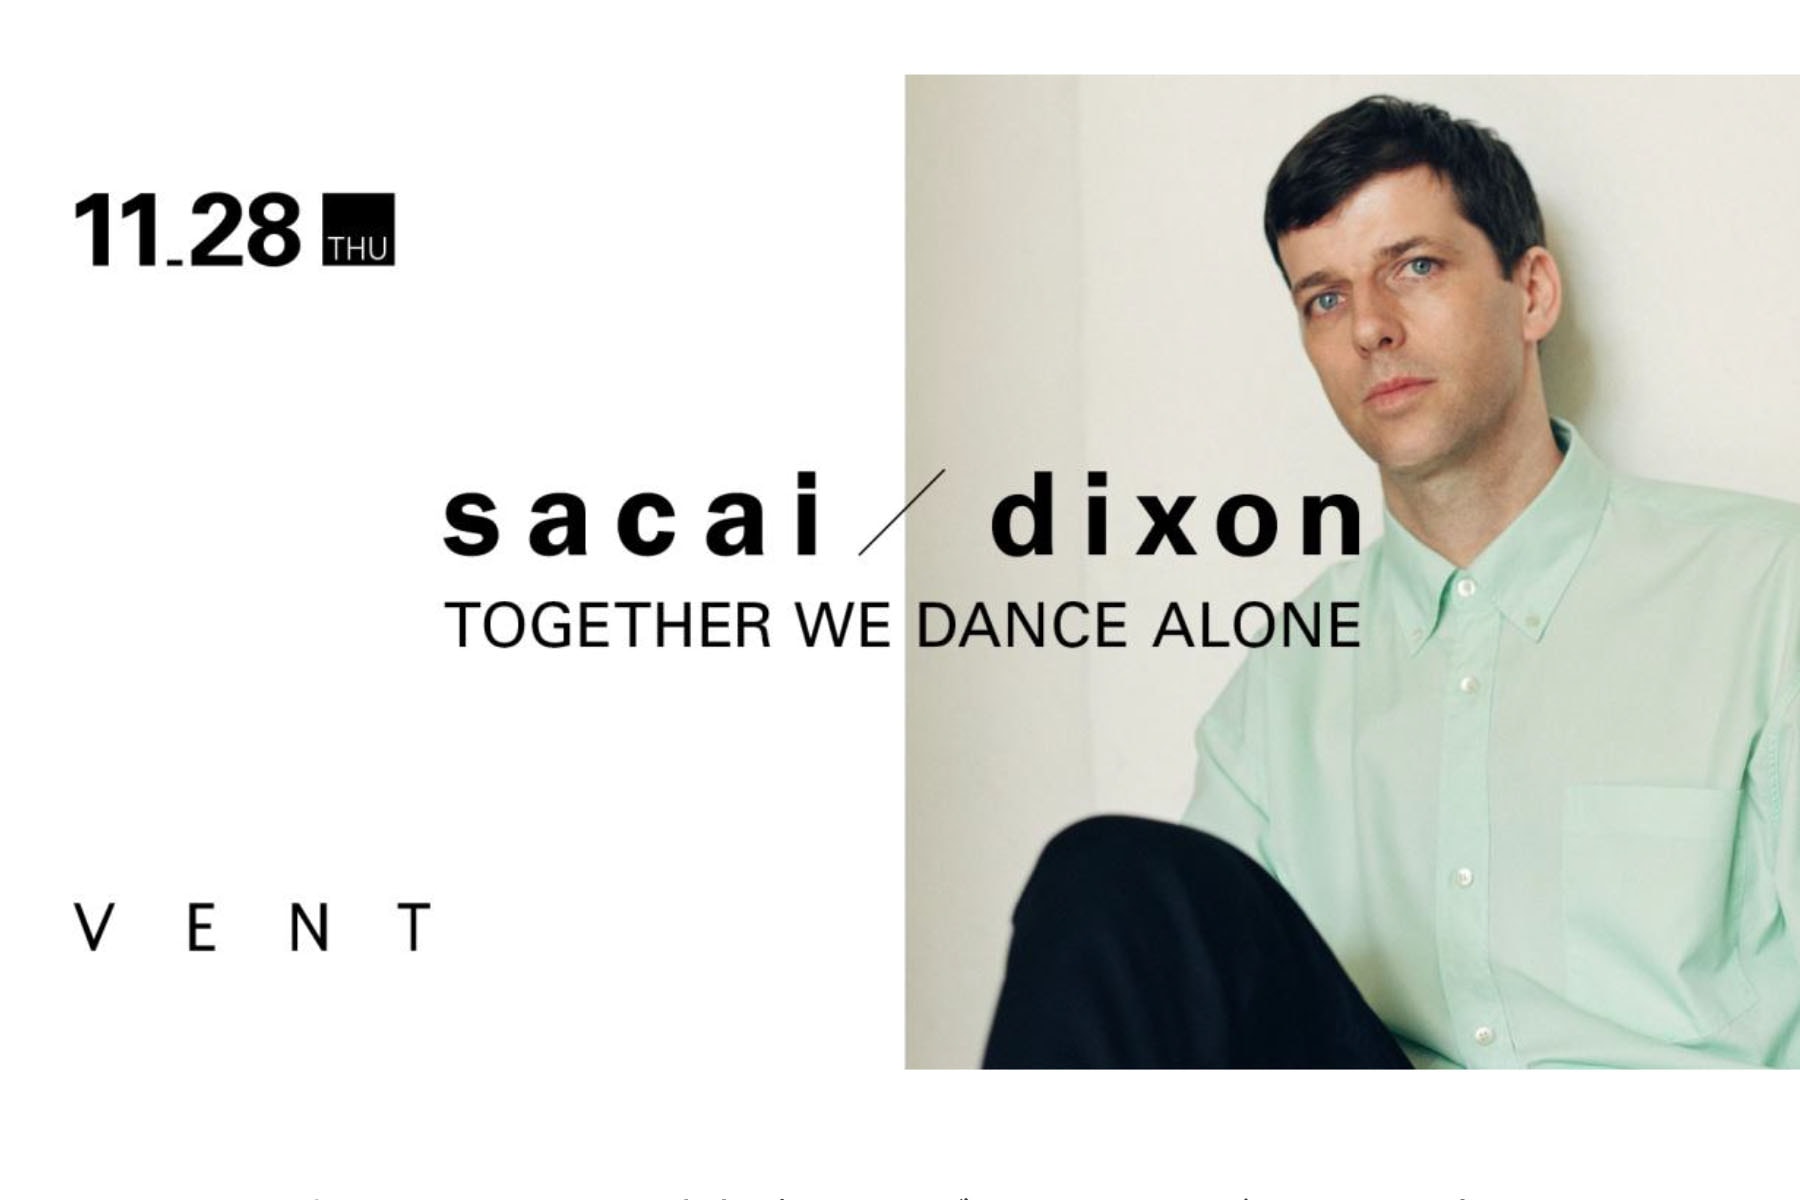 サカイがディクソンとのコラボパーティーを開催 sacai が世界的DJの Dixon とタッグを組んだコラボパーティー “TOGETHER WE DANCE ALONE” を開催